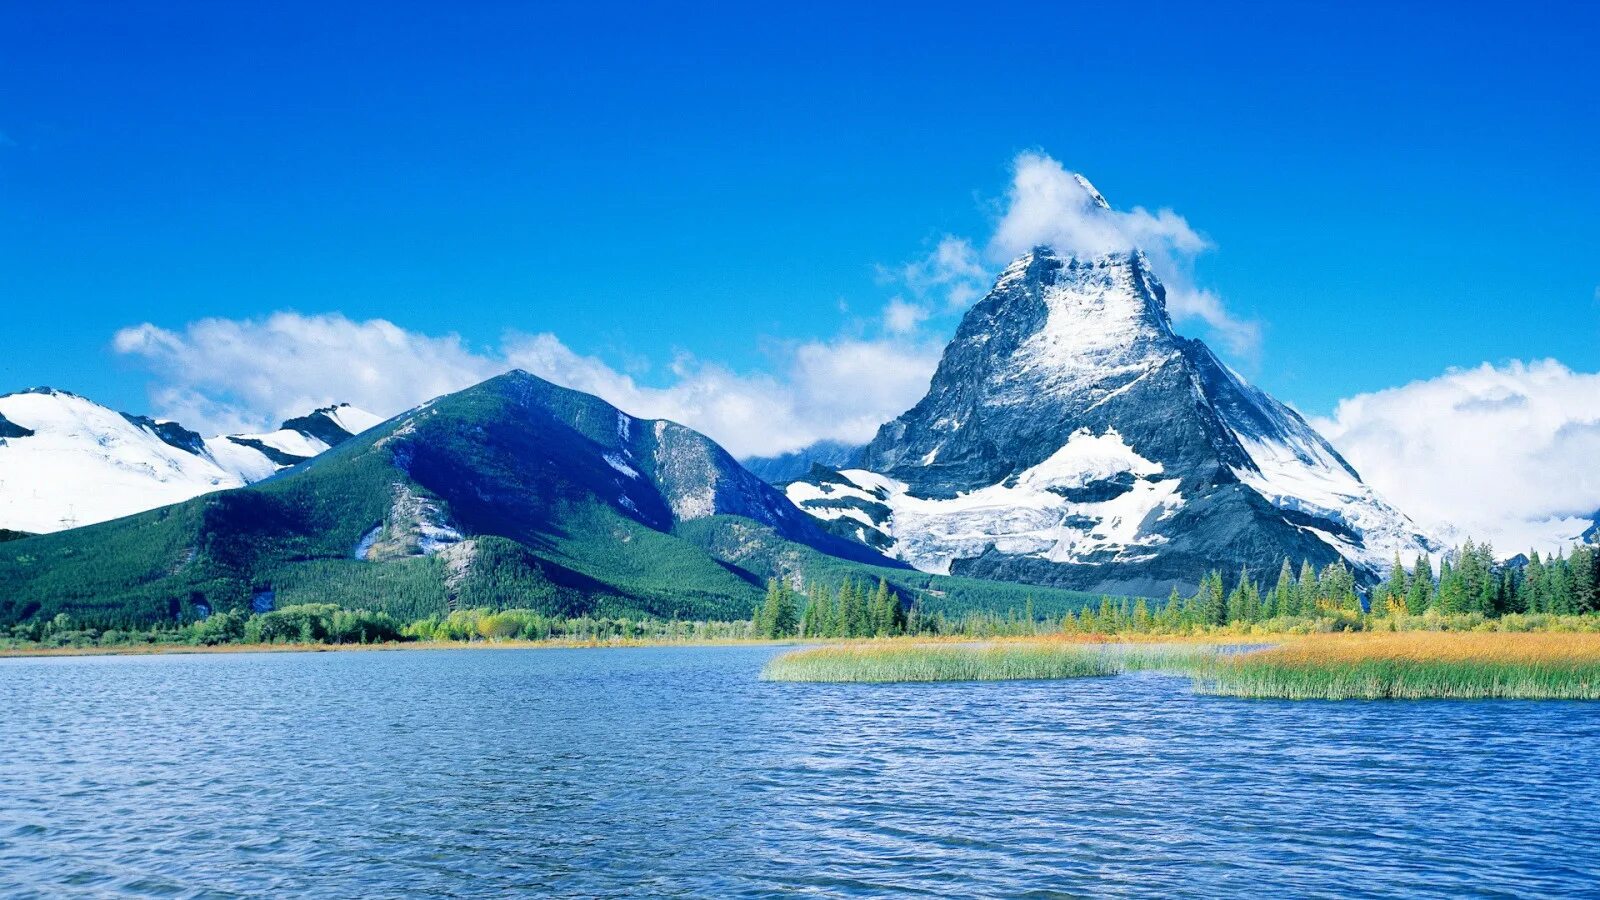 Обои качества 1080. Маунтайн Лейкс. Блу-Маунтинс (горы, США). Горы и вода. Пейзаж.